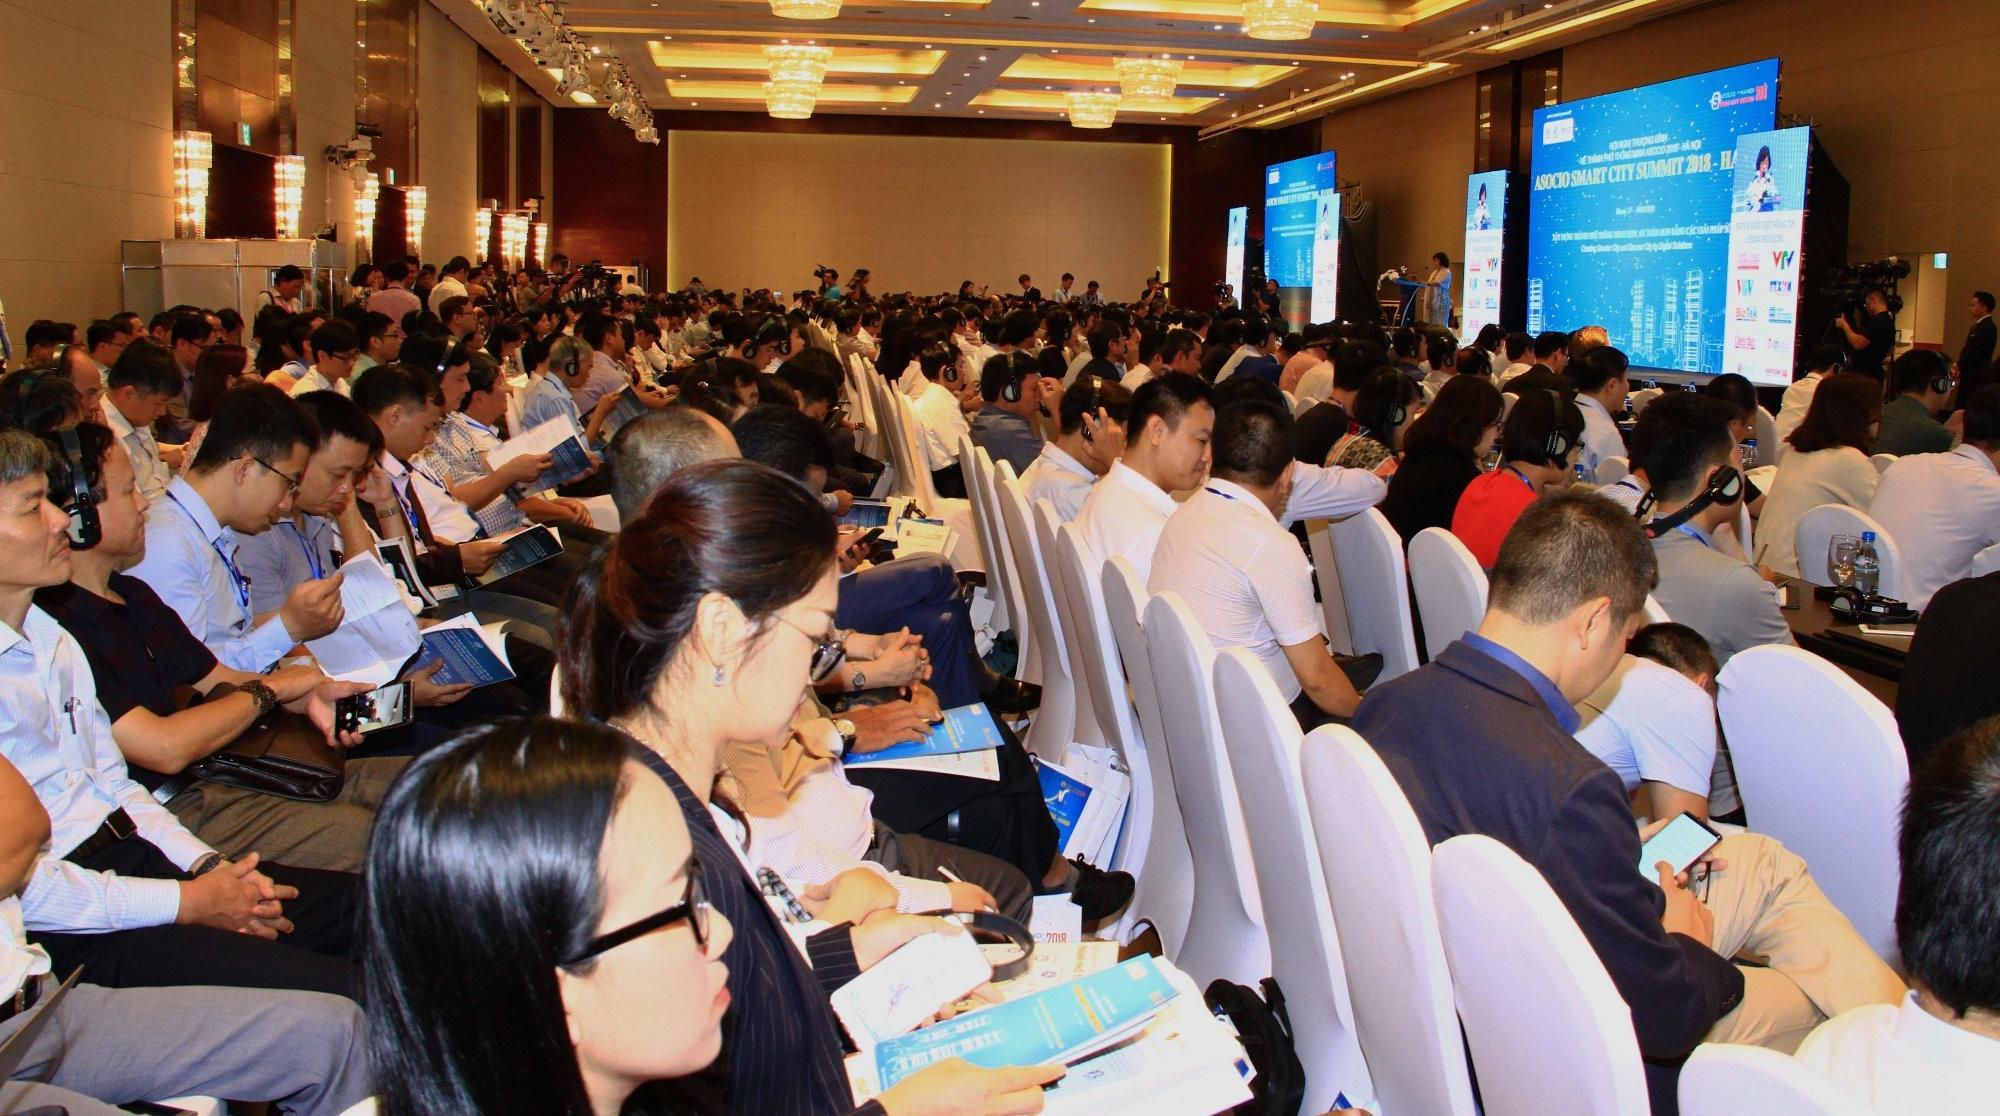 Khai mạc Hội nghị thượng đỉnh thành phố thông minh Asocio 2018 - Hà Nội